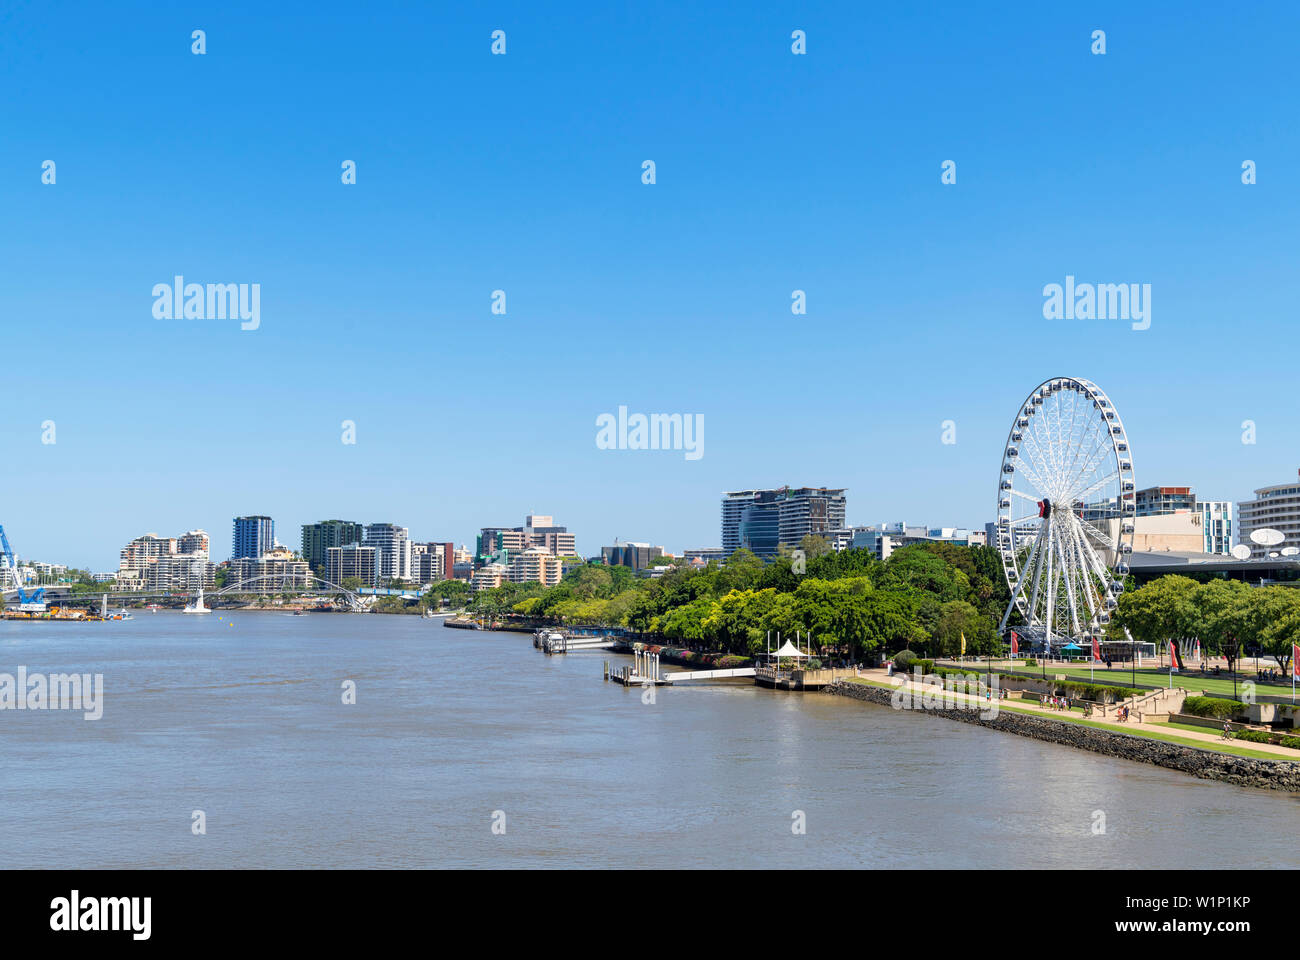 Das Rad von Brisbane am Brisbane River gesehen von der Victoria Bridge, Brisbane, Queensland, Australien Stockfoto